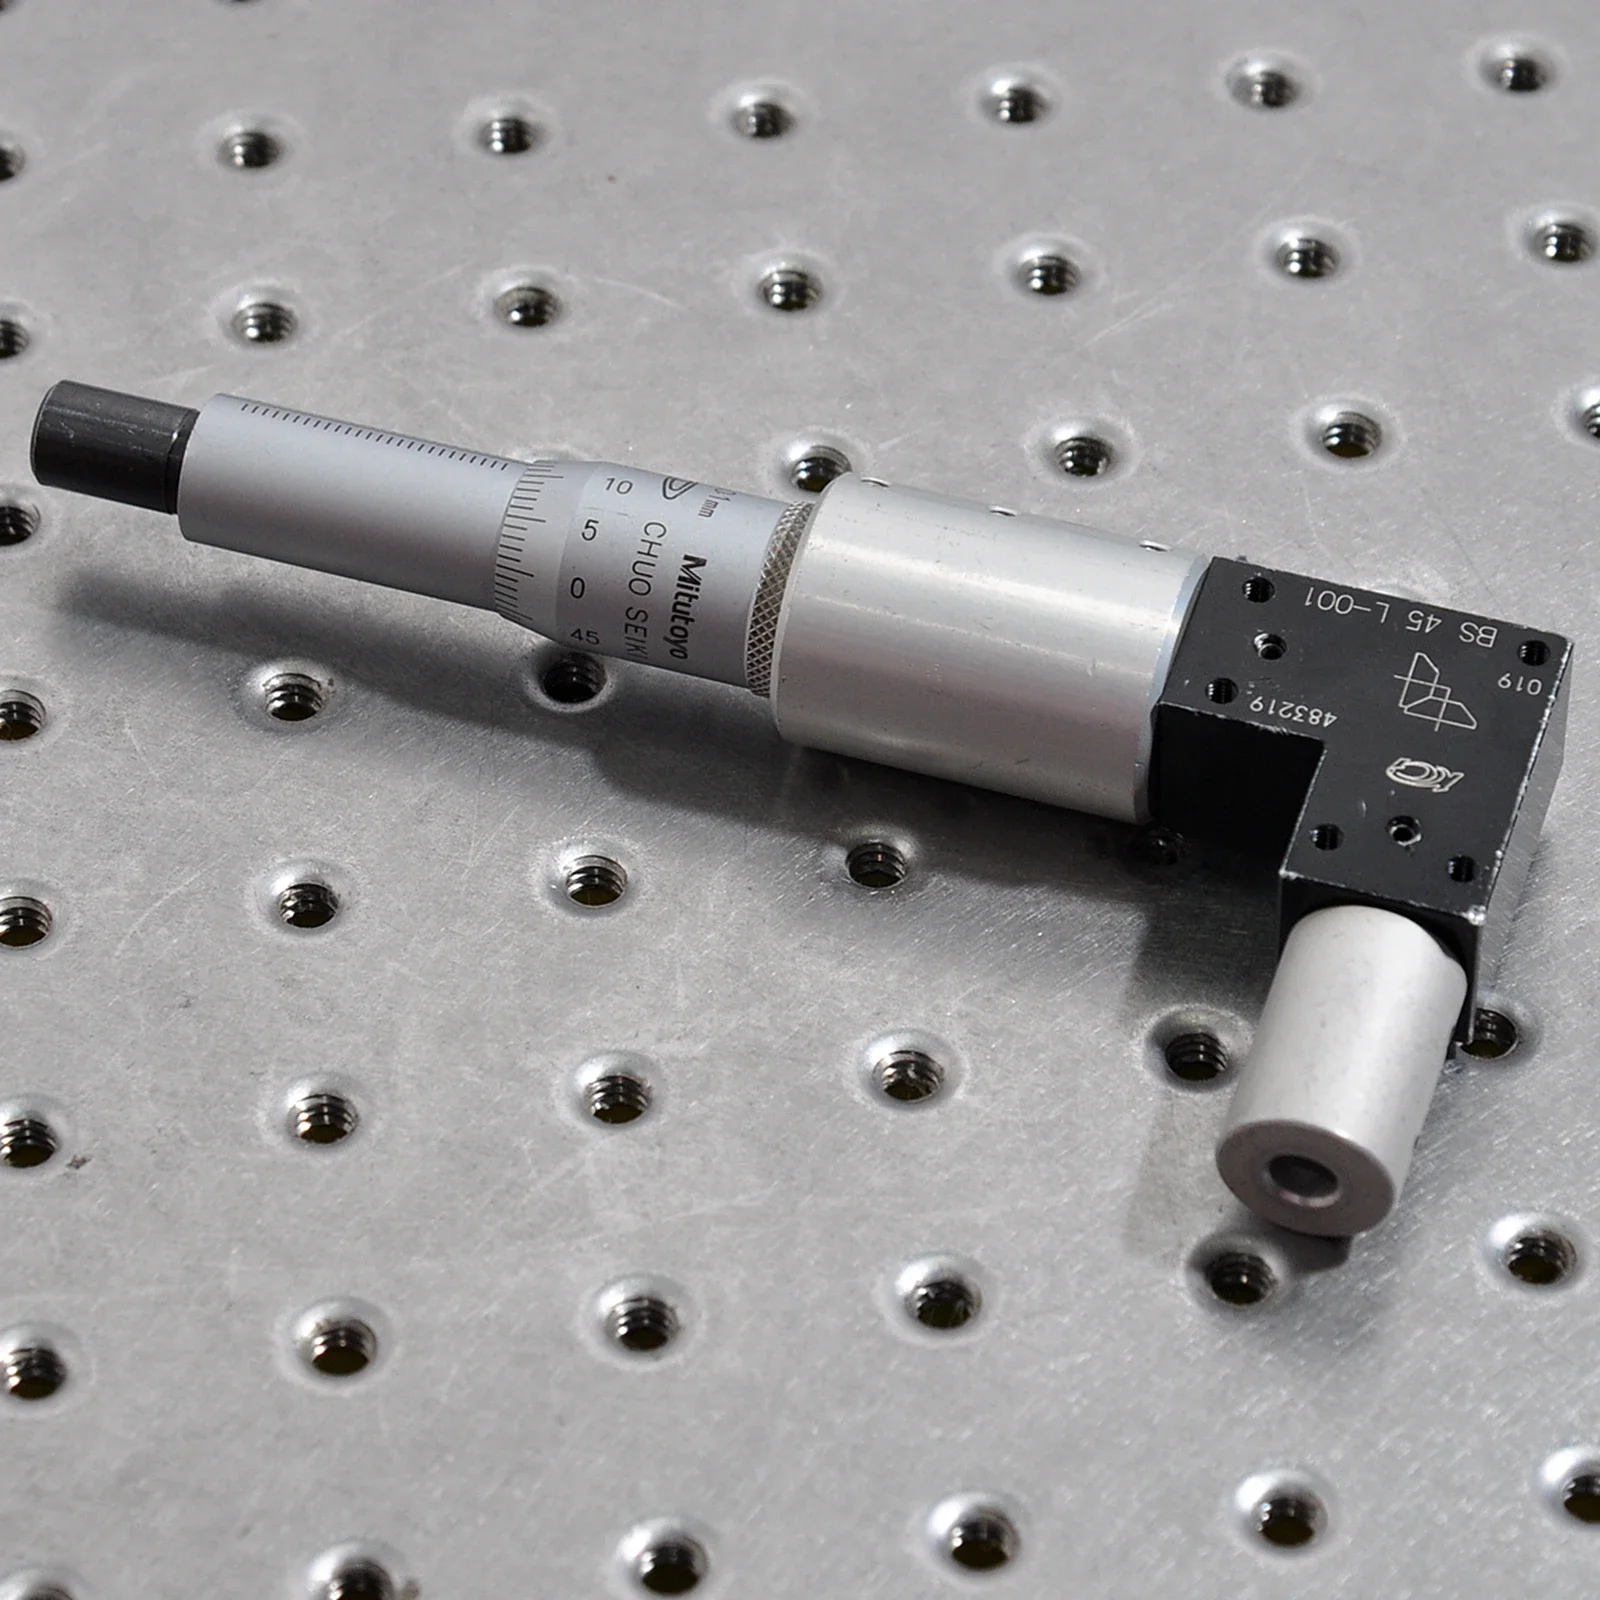 chuo-–-micrometre-bs-45-l-01-001mm-0-25mm